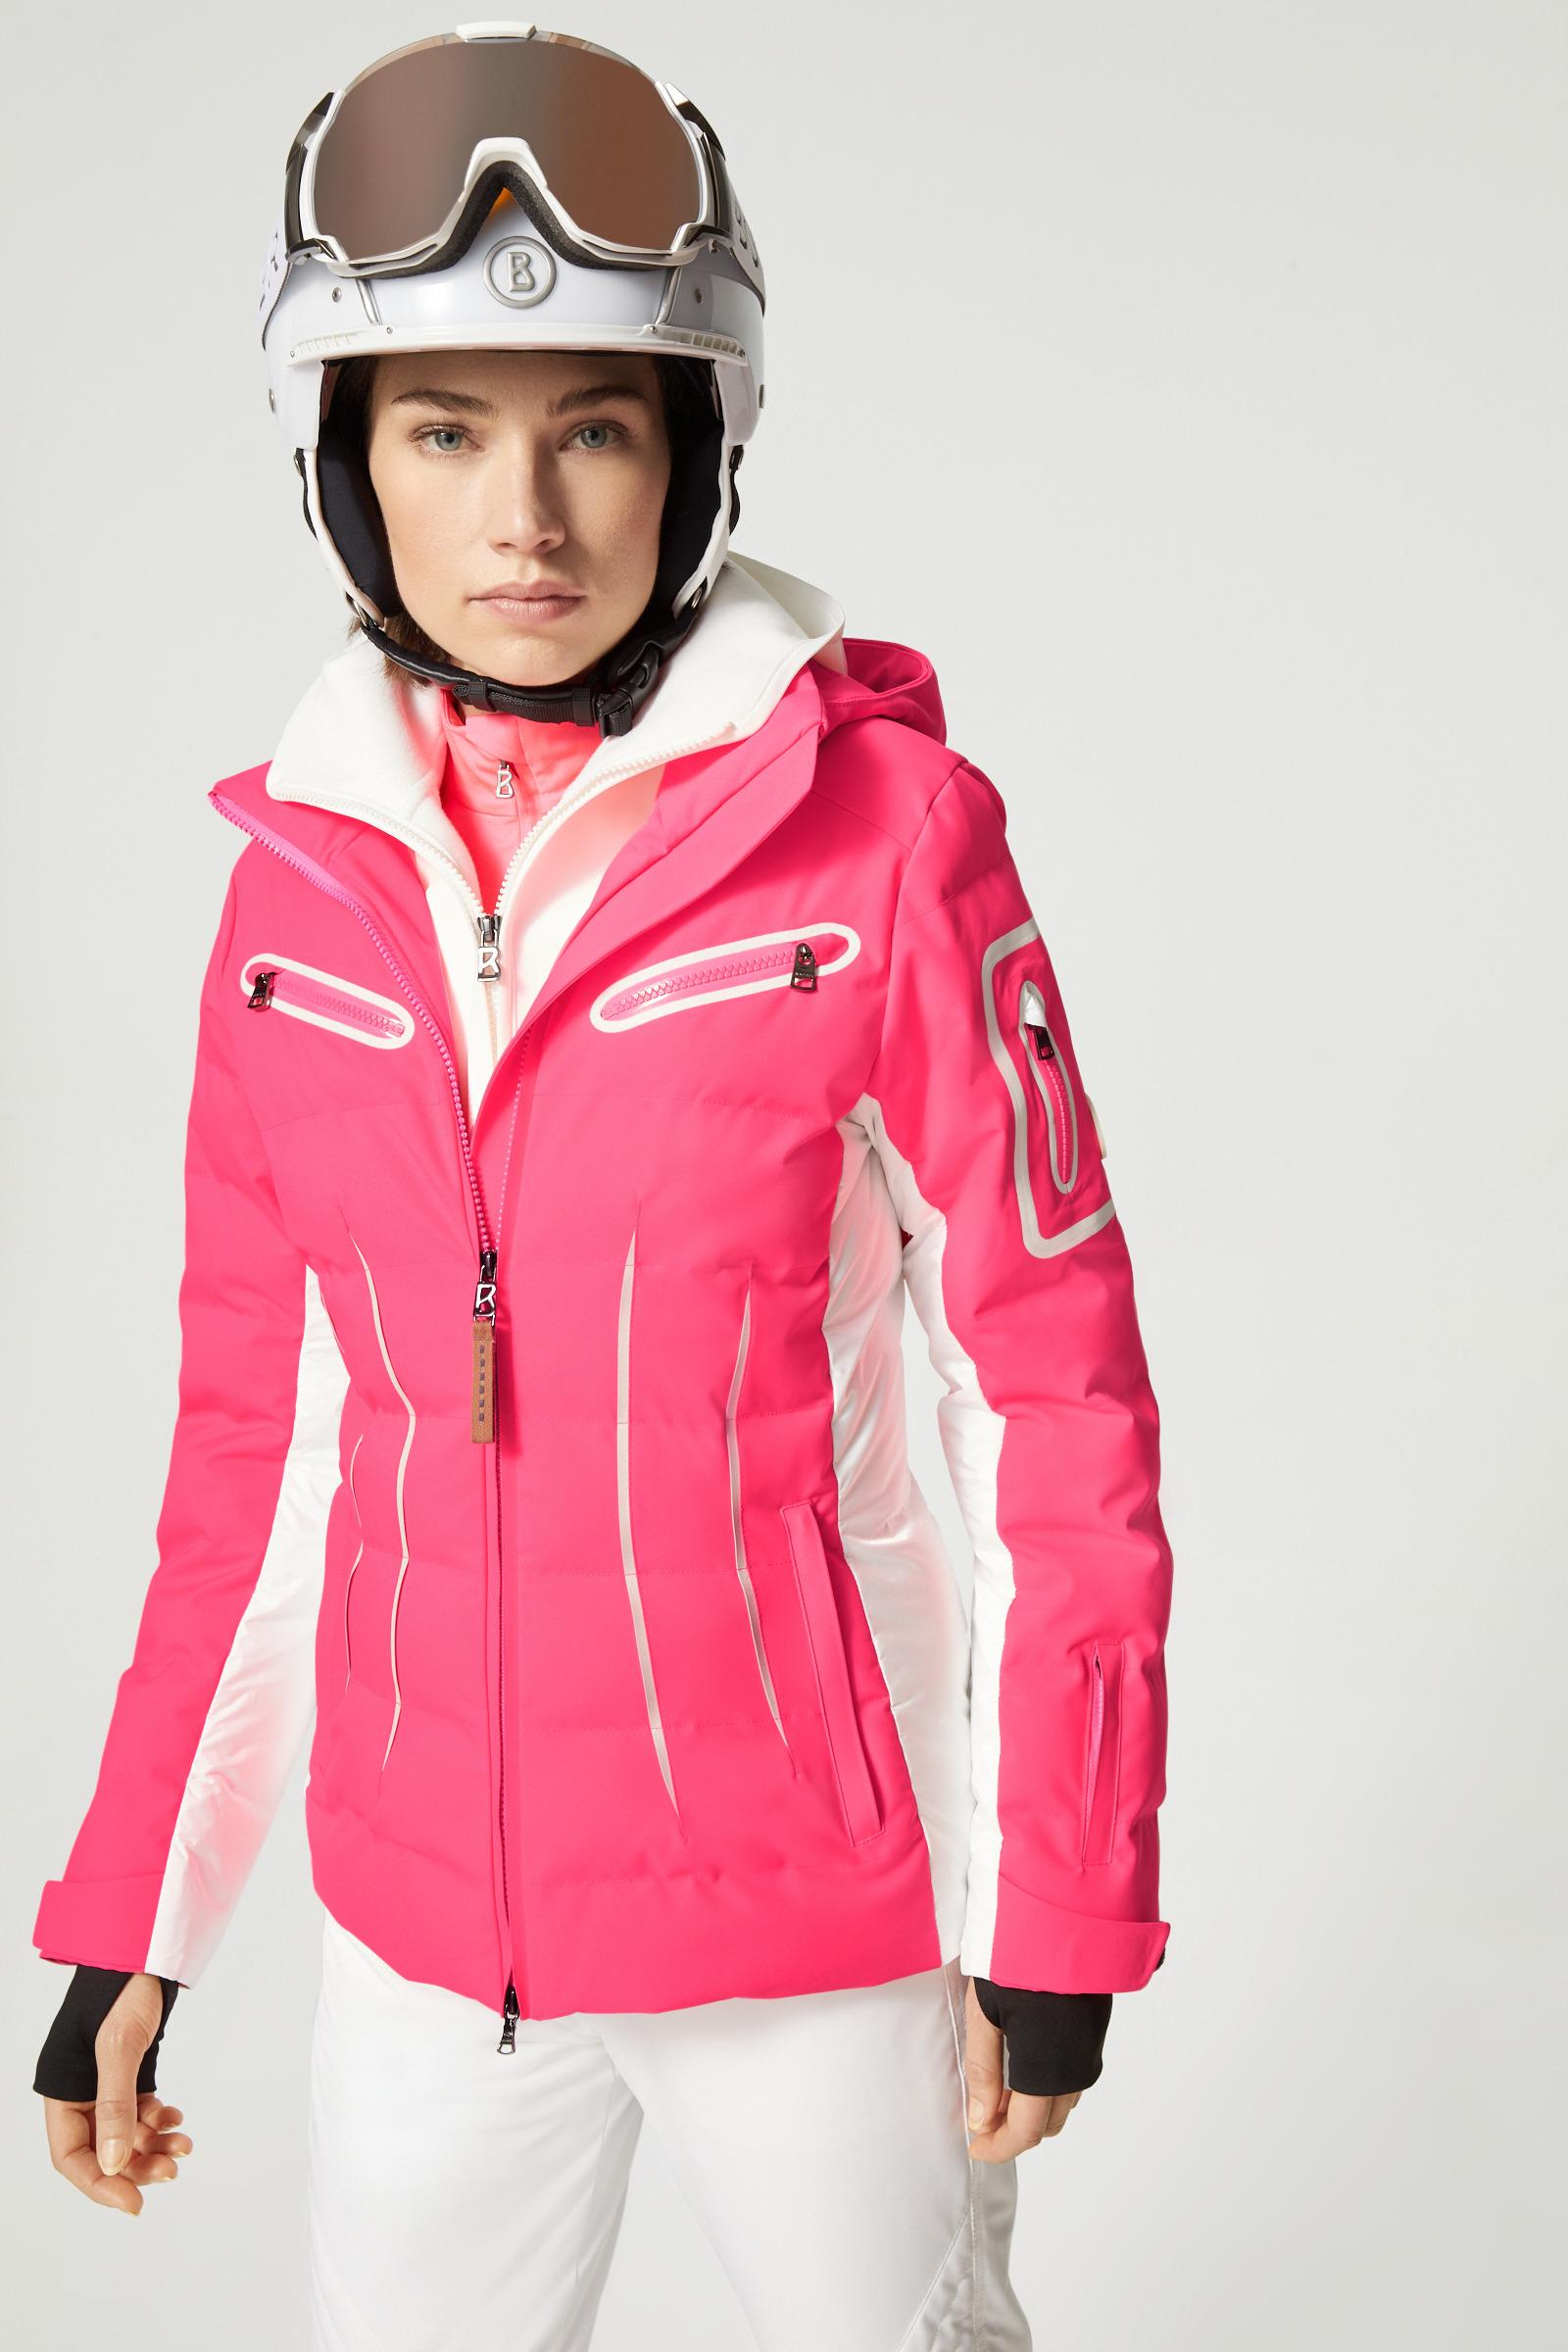 Bogner Rubber Elly Ski Jacket in Pink/White (Pink) | Lyst